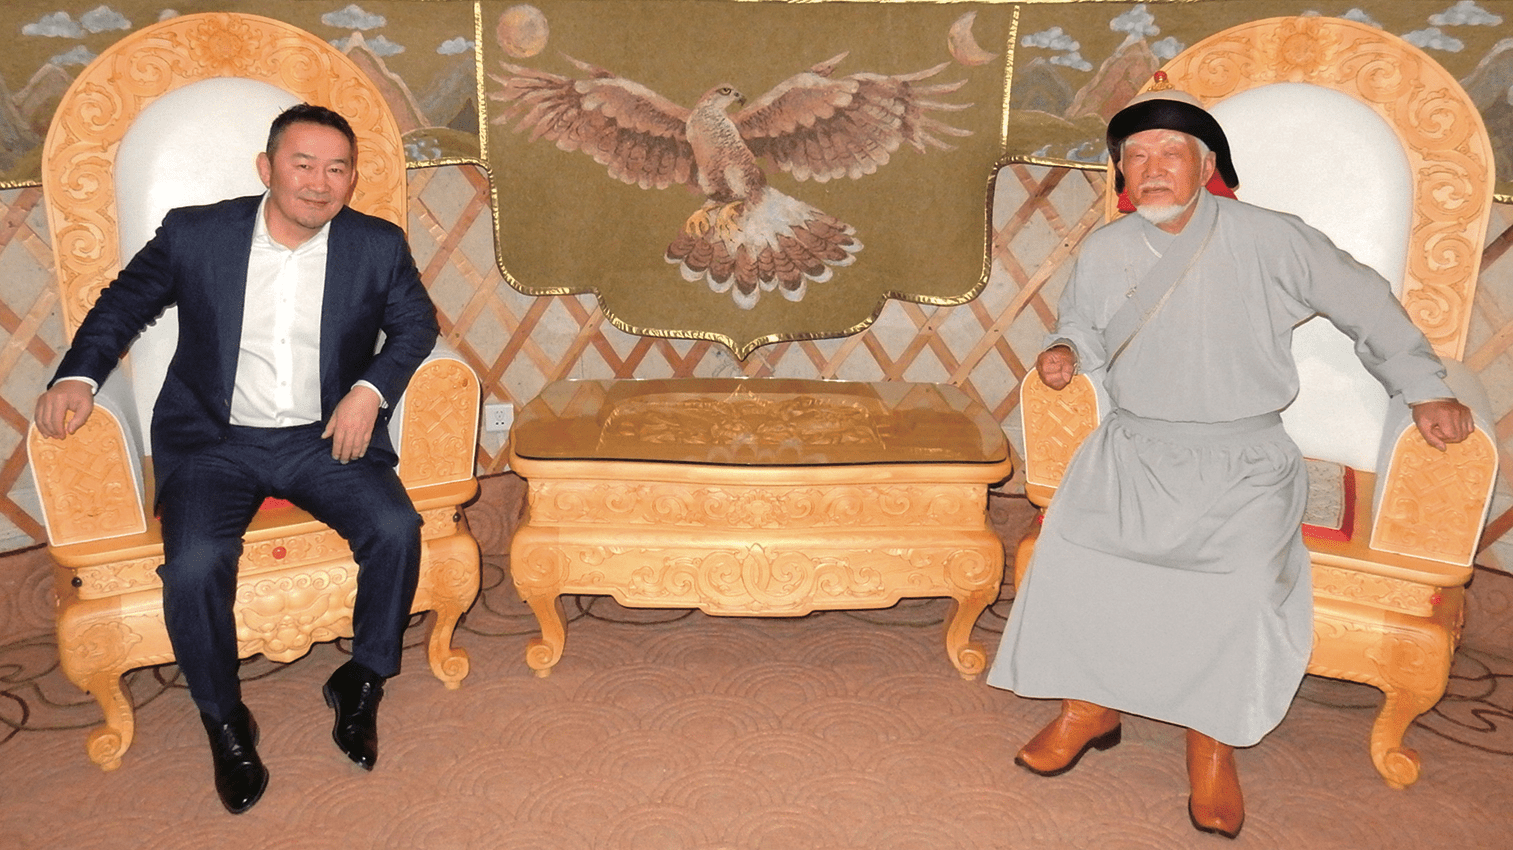 ハルトマー・バトトルガモンゴル国大統領と共に